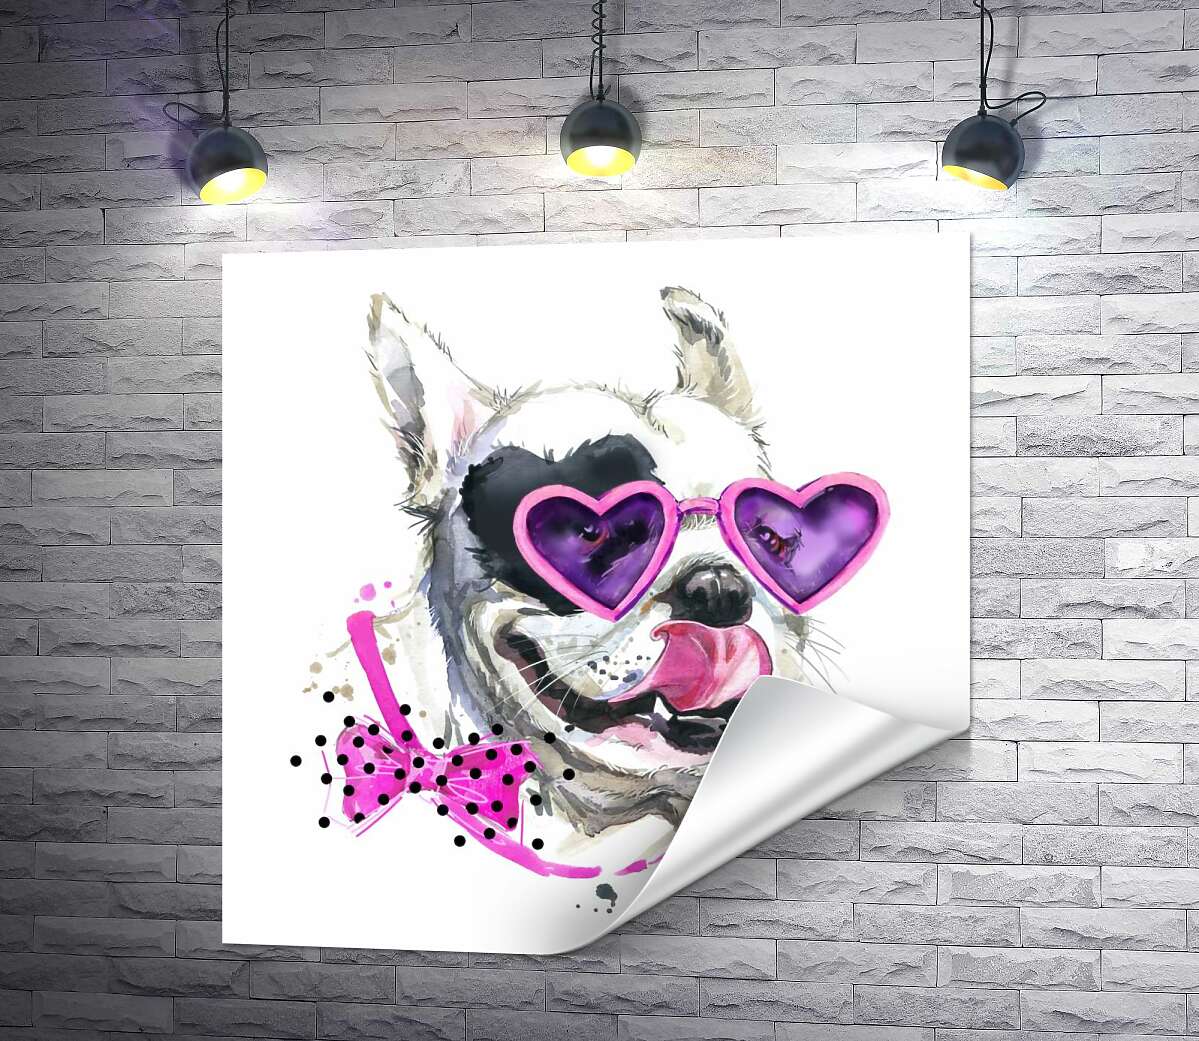 друк Білий собака з чорною плямою-серцем на оці  та в рожевих окулярах